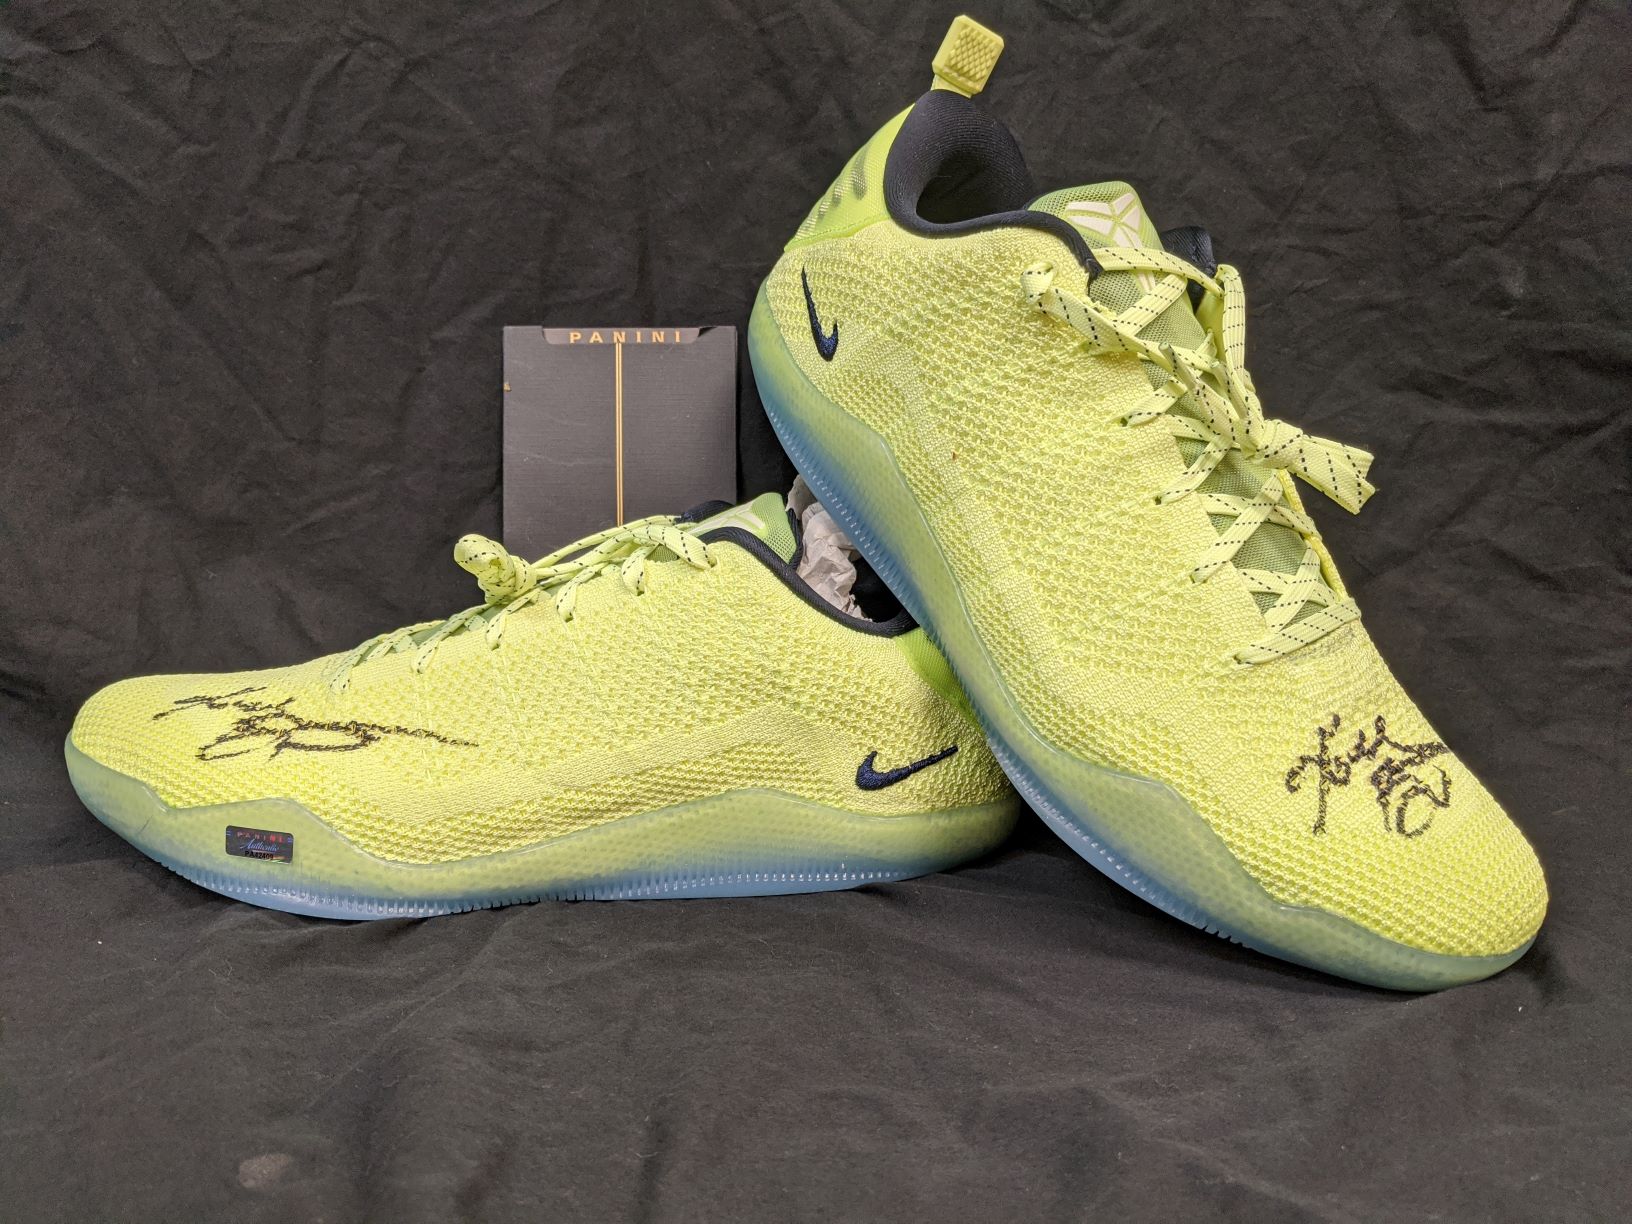 Kobe 11: Kobe Bryant, Nike unveil new signature shoe - Sports Illustrated